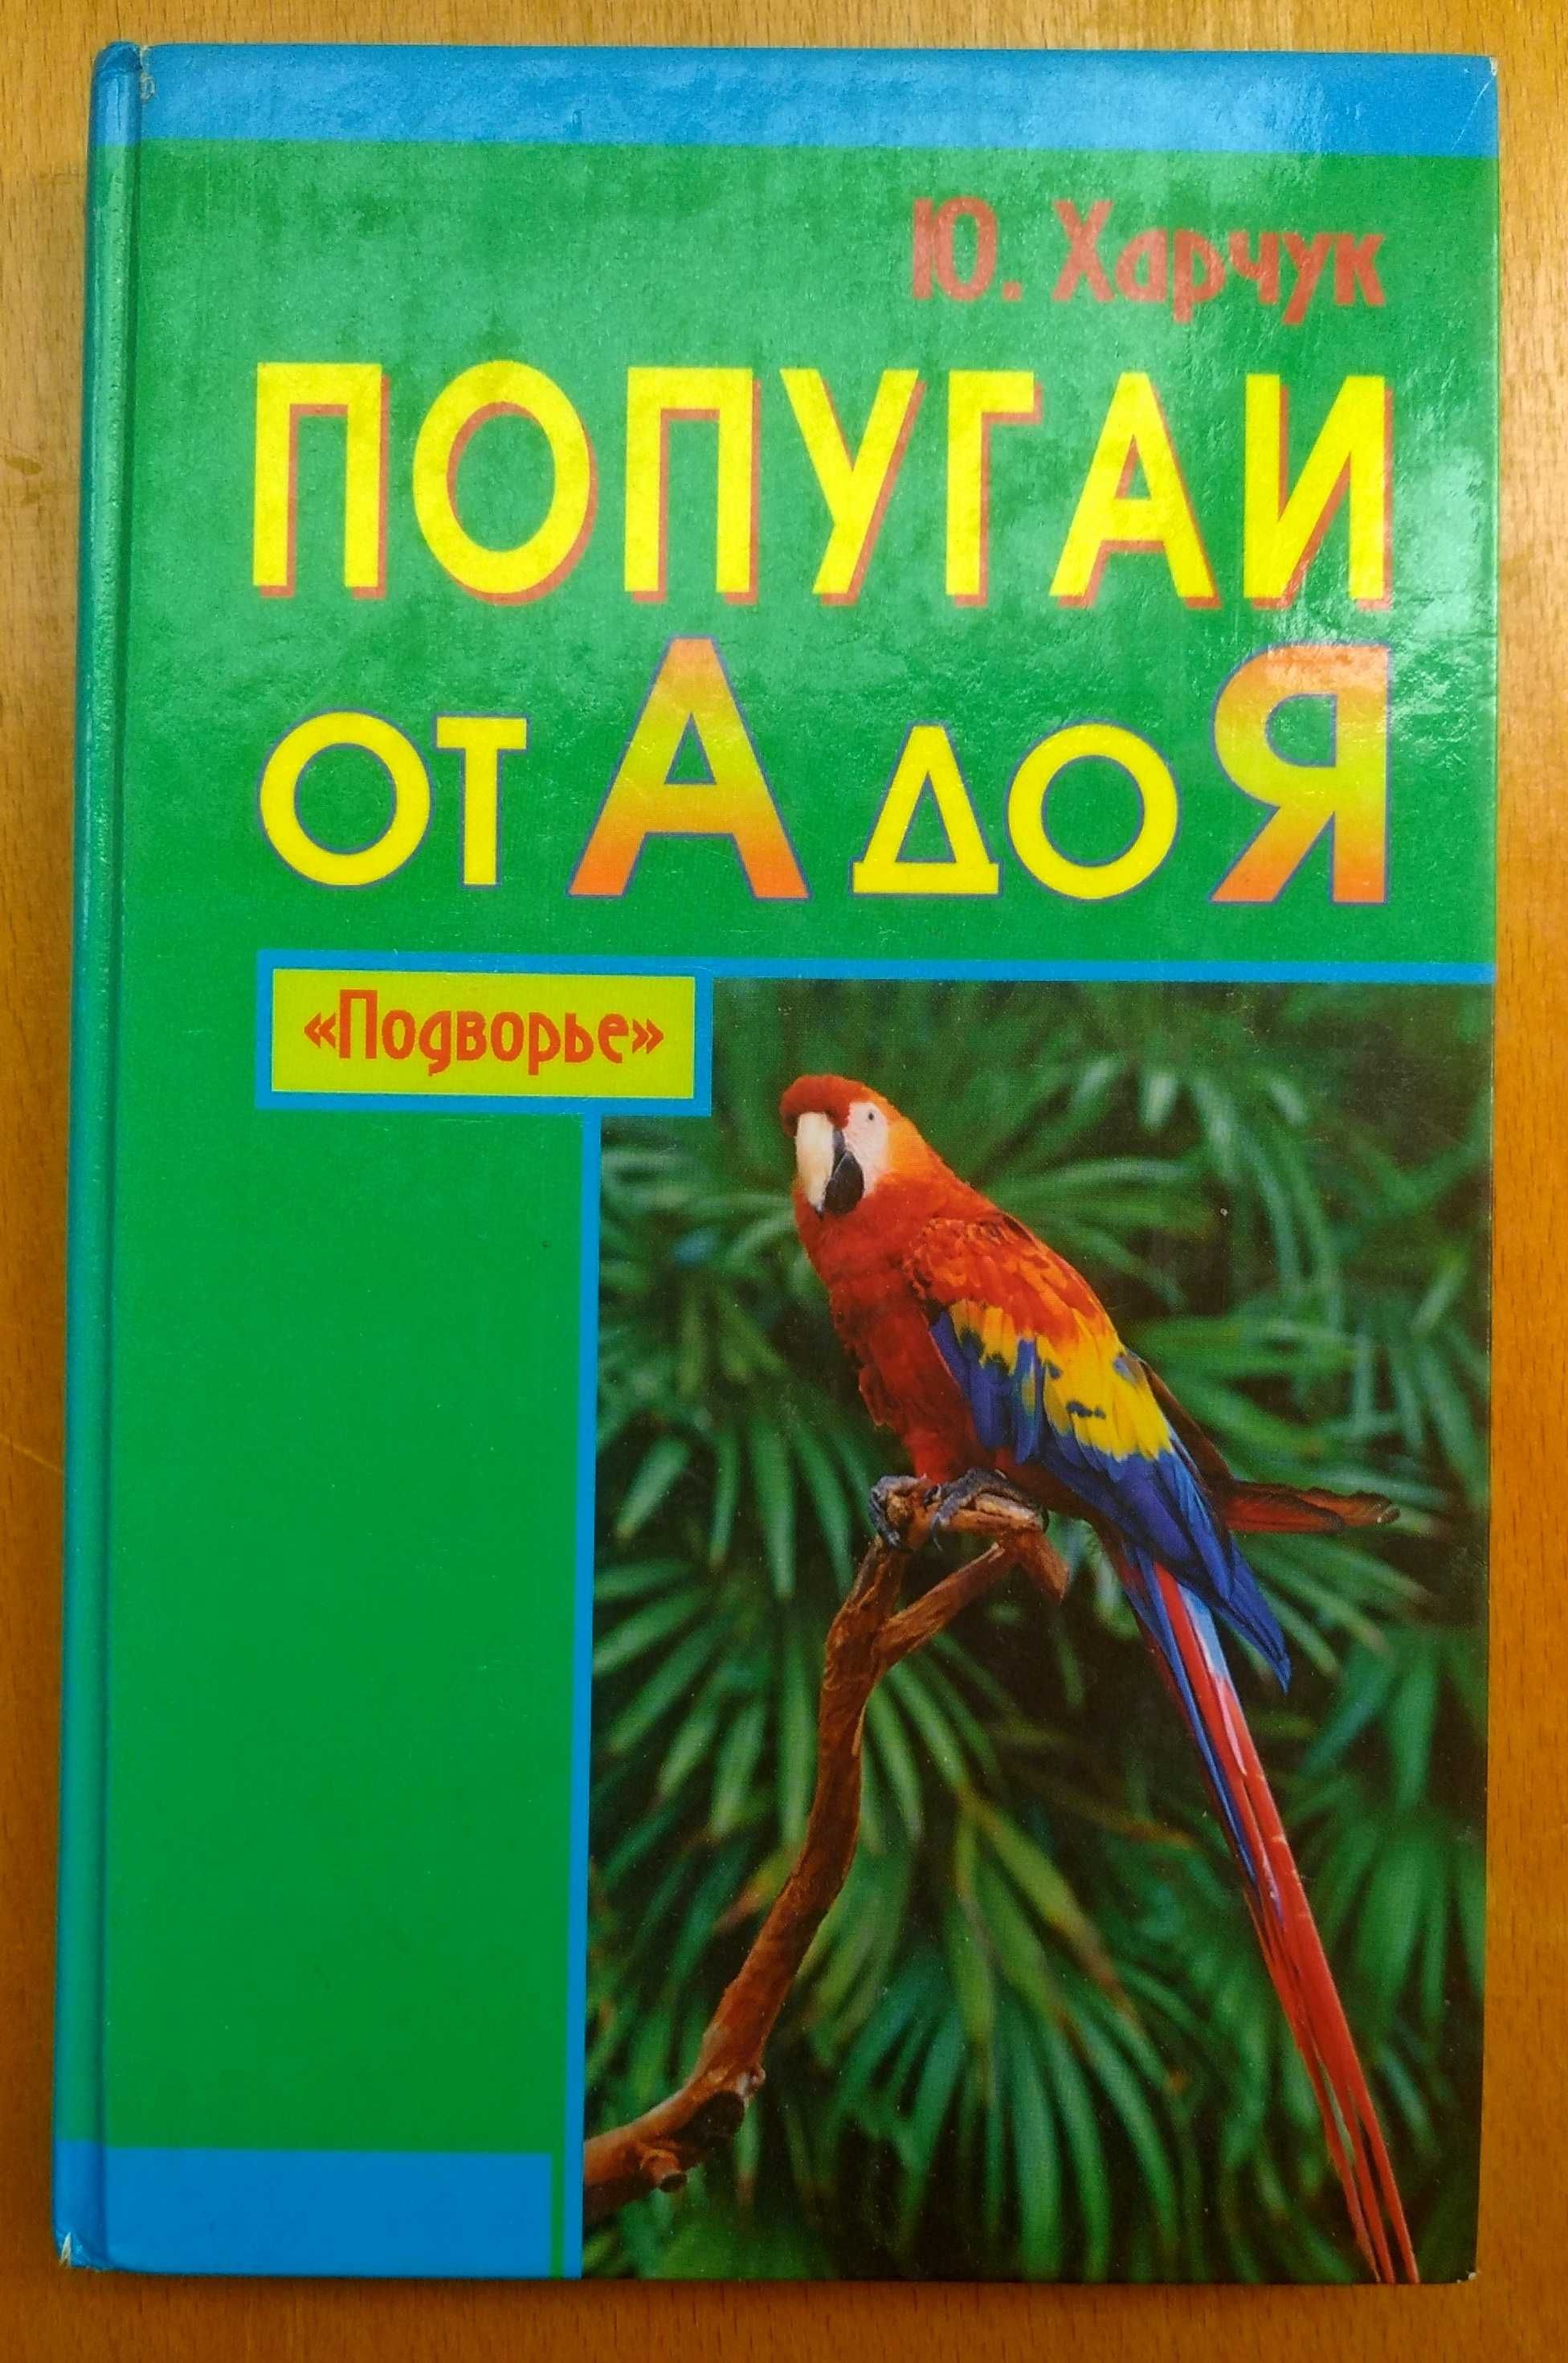 Книга "Попугаи от А до Я" автор Ю.Харчук